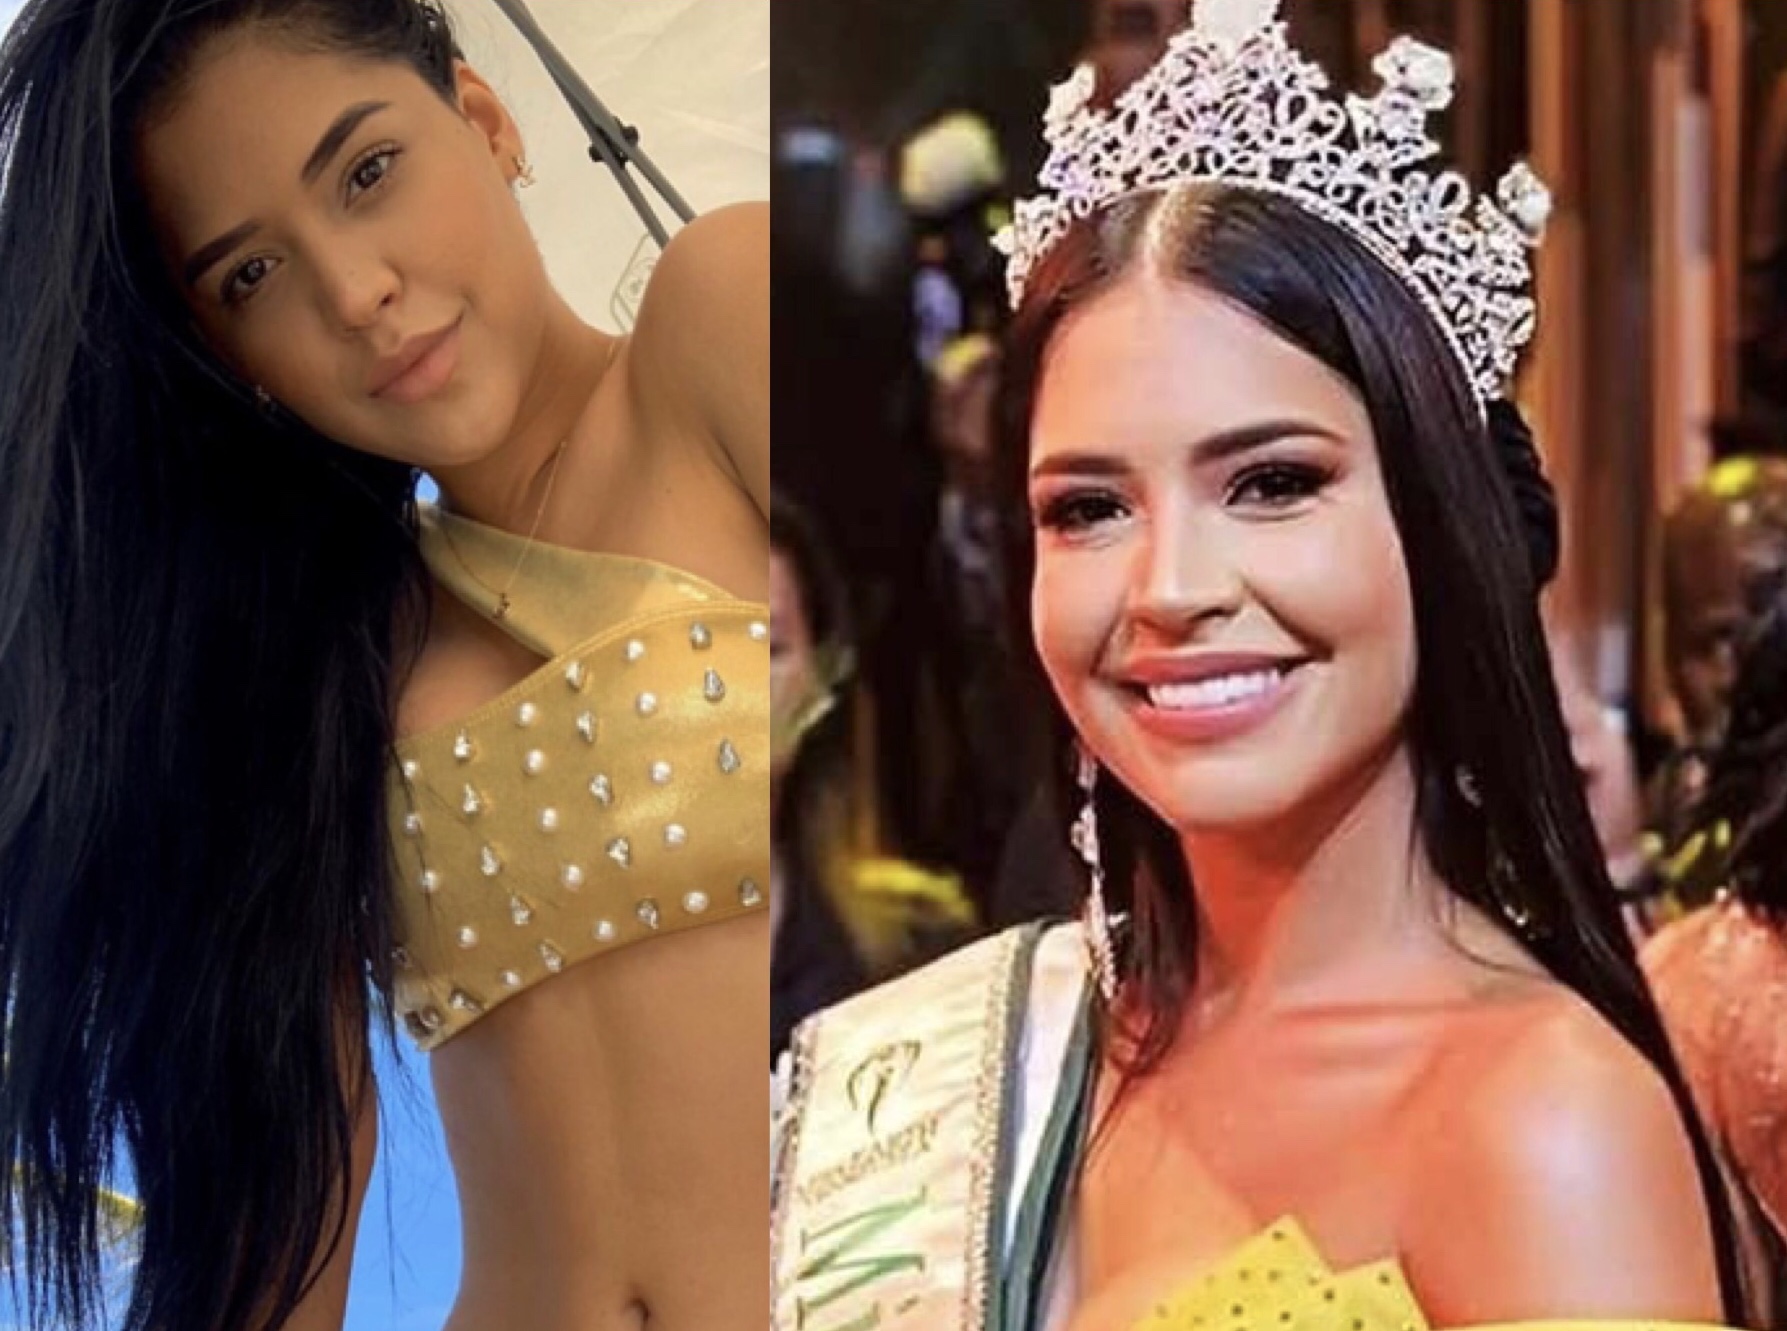 Miss corona-party se quita la ropa en Instagram a días del escándalo de su detención